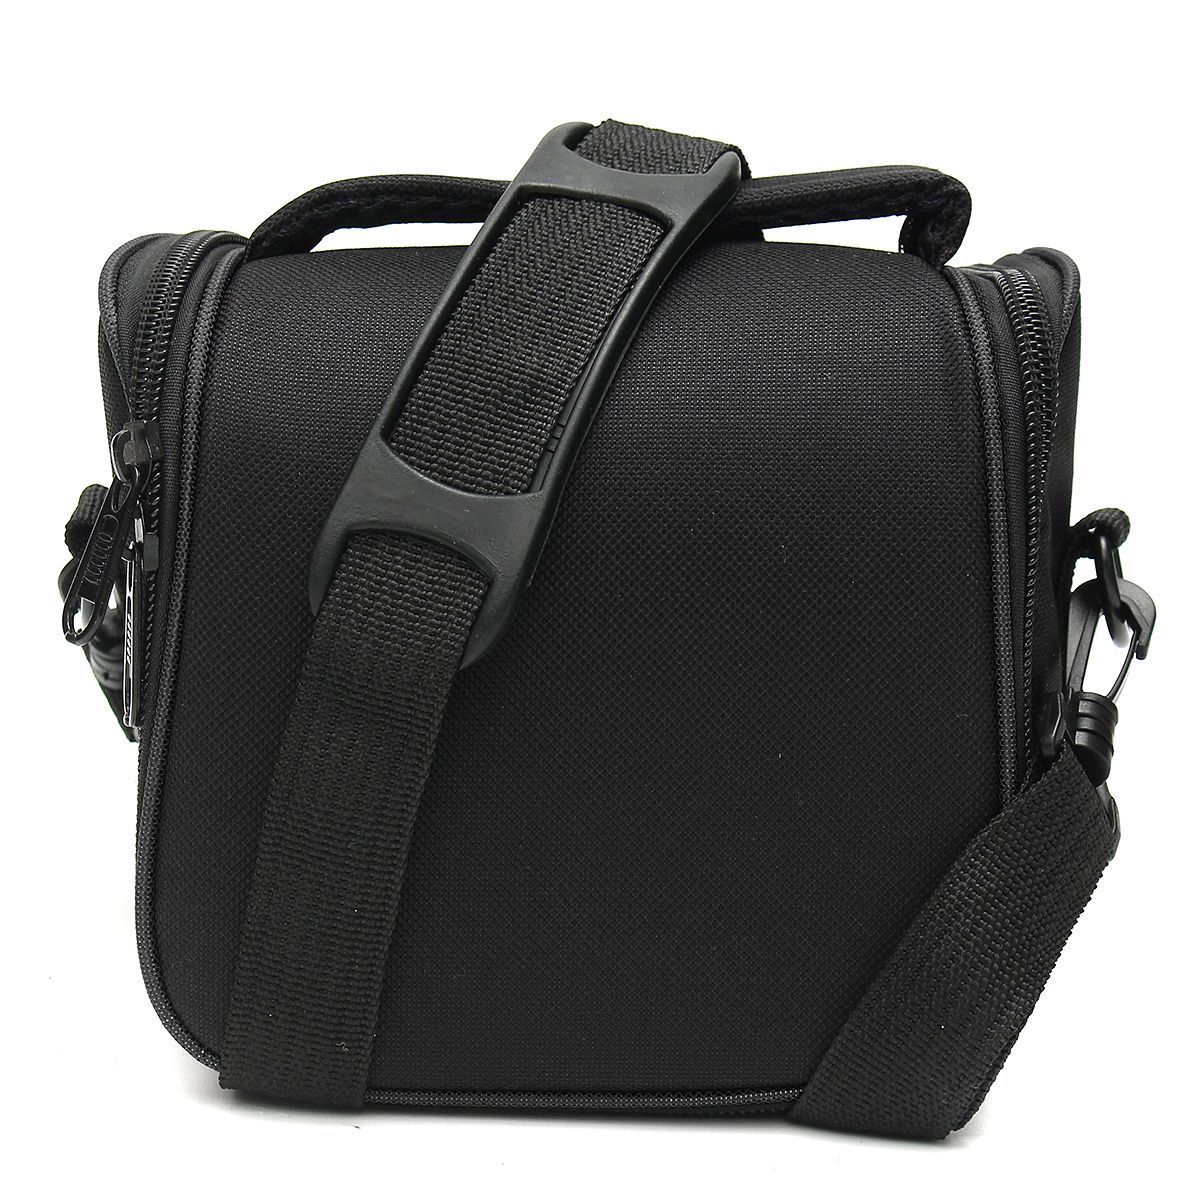 Water-resistant-Camera-Shoulder-Sling-Bag-Carry-Travel-Case-for-DLSR-SLR-Digital-Camera-Flash-Lens-1633798